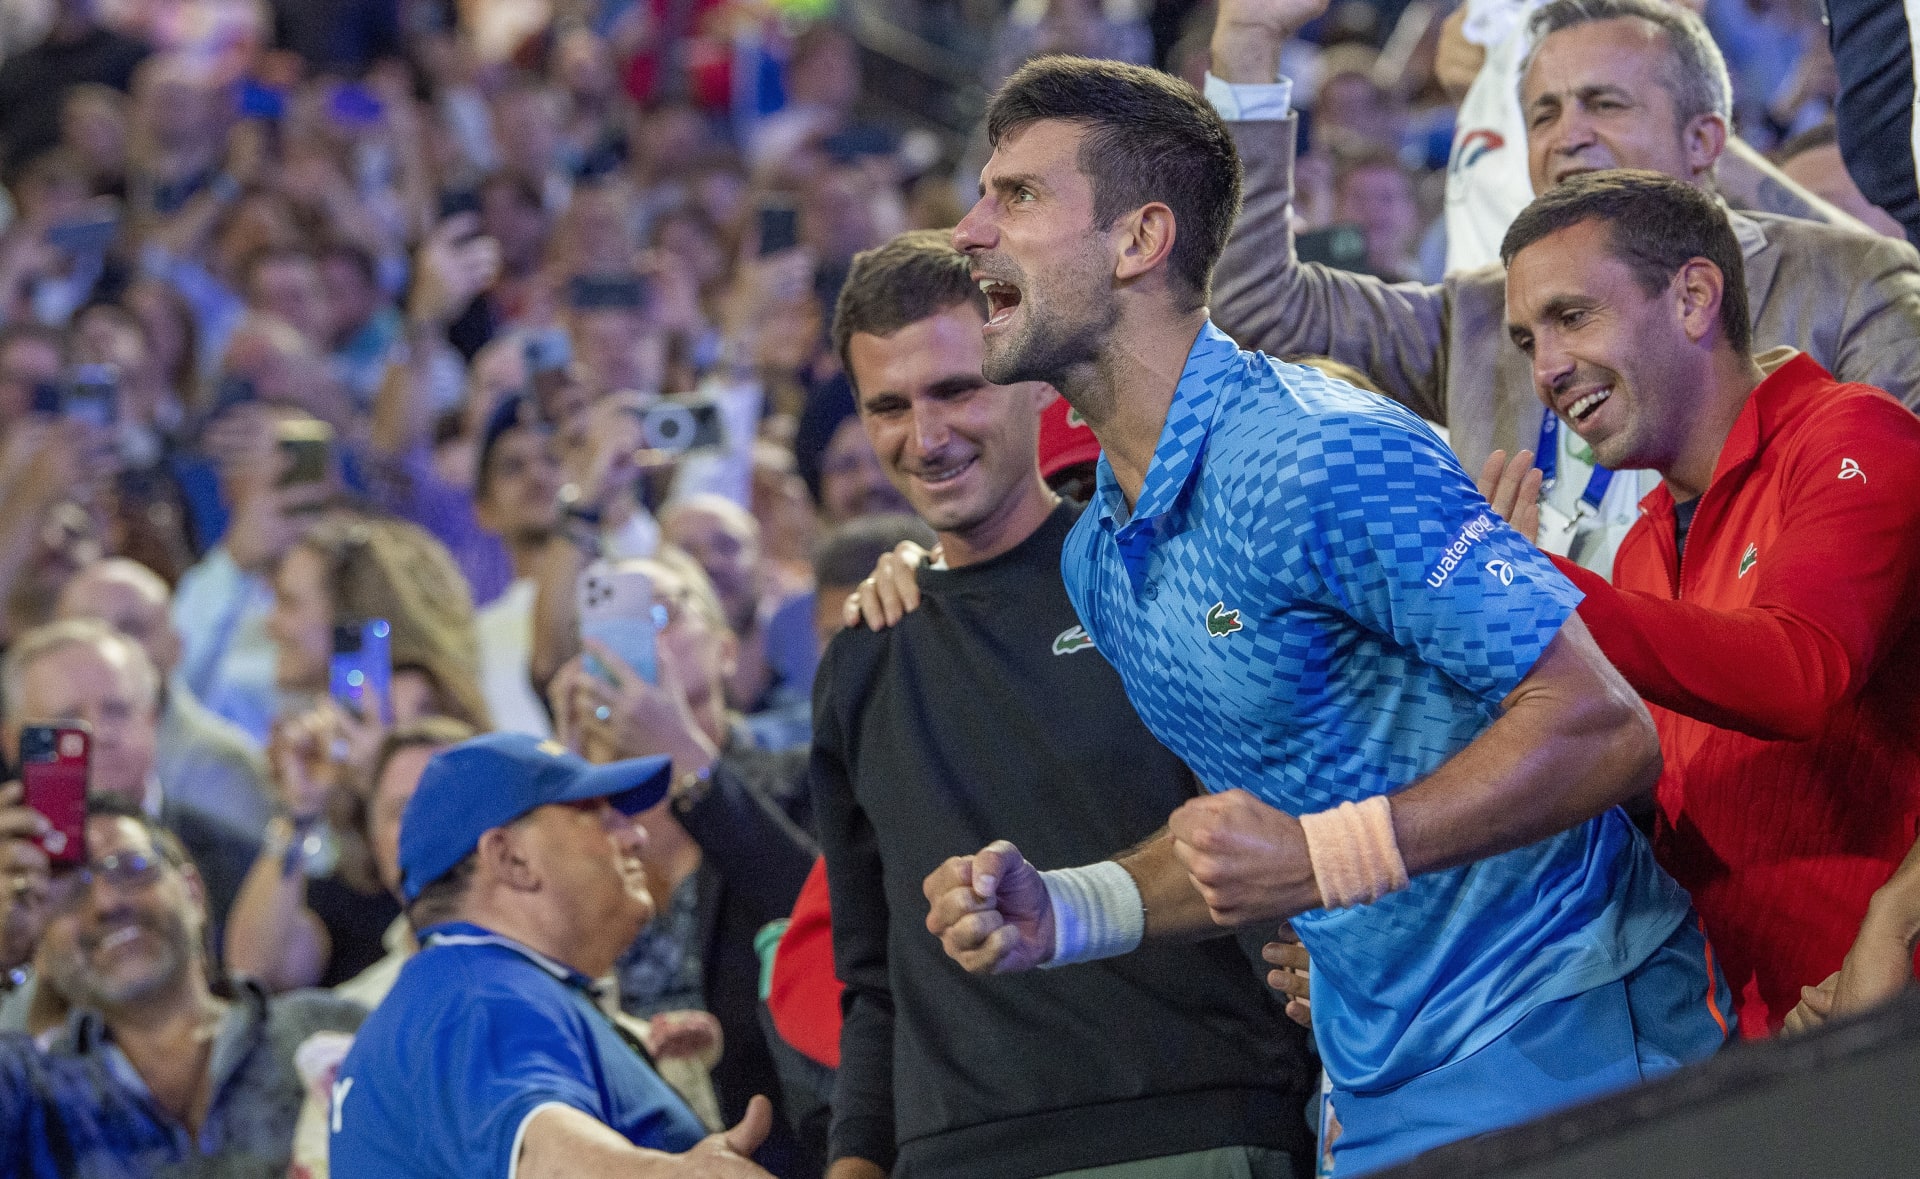 Djokovič zažil na Australian Open zřejmě nejemotivnější triumf v kariéře.